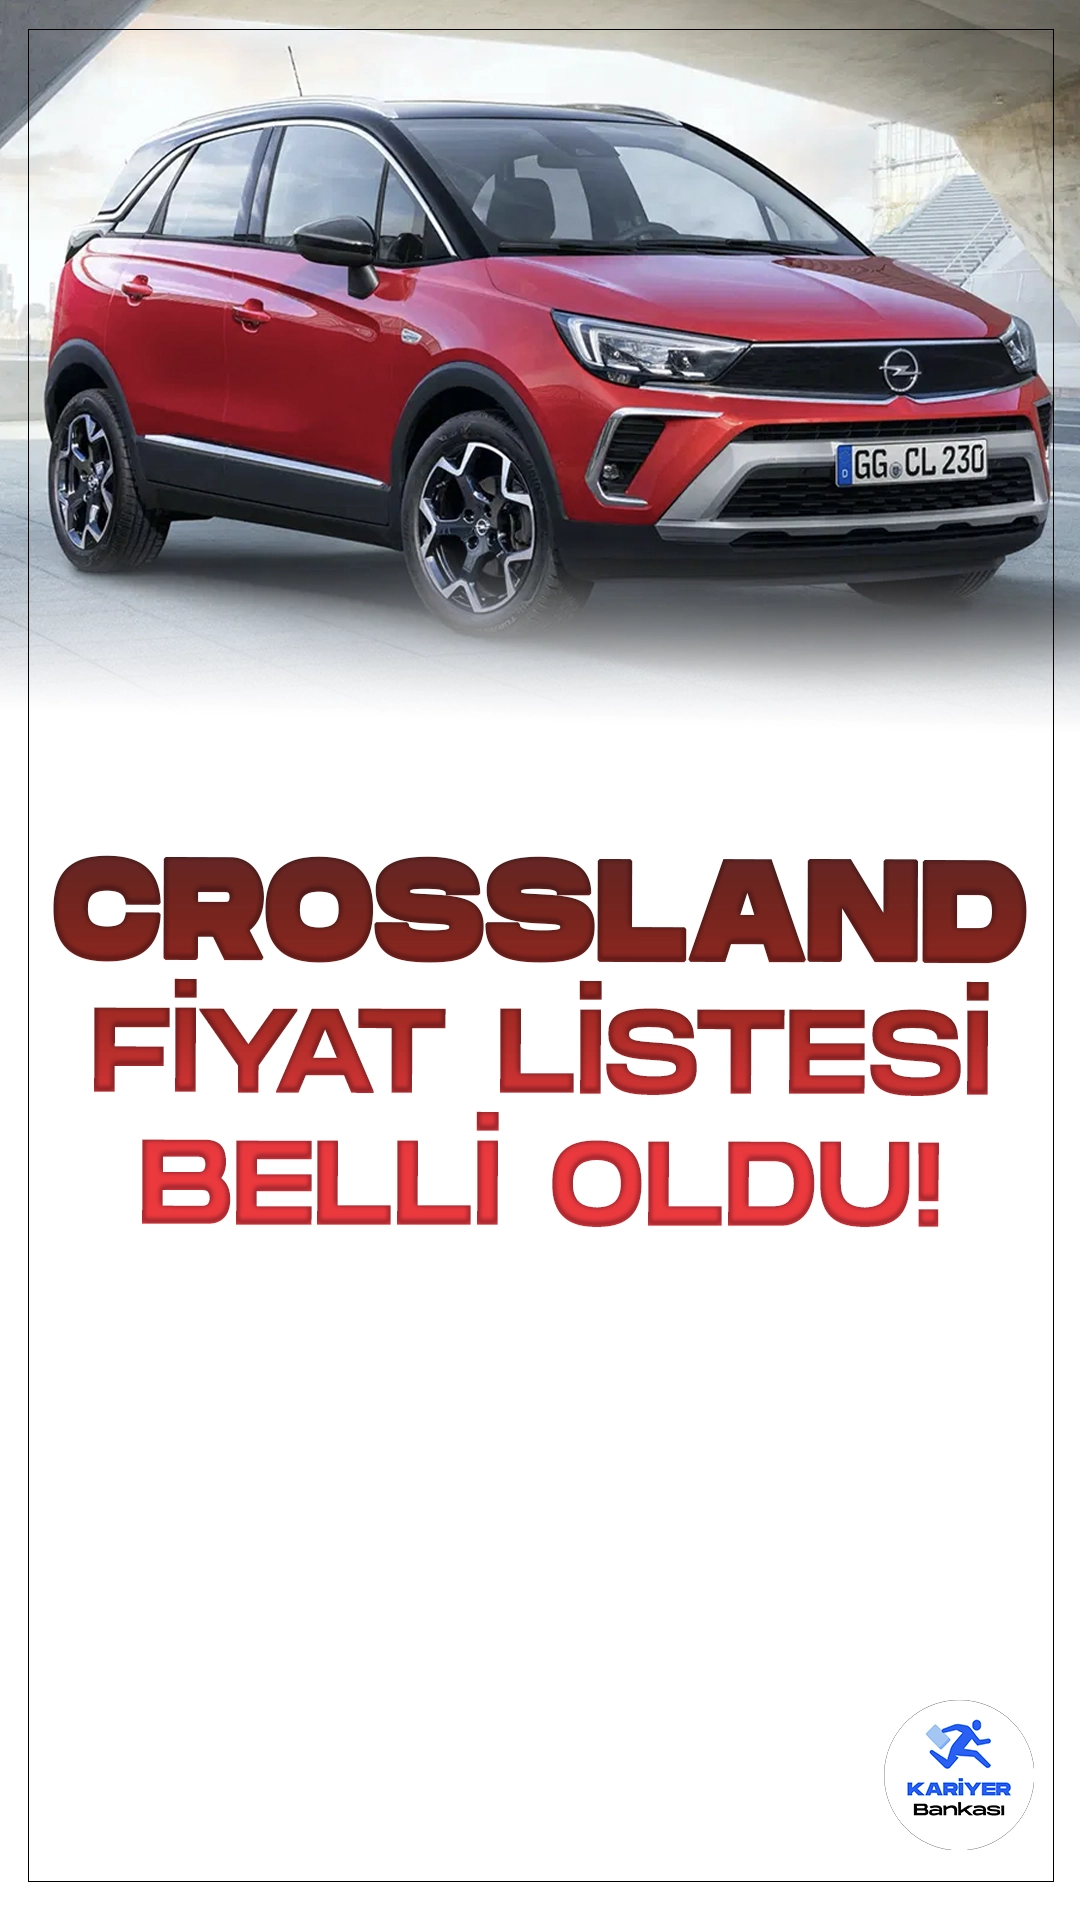 Opel Crossland Temmuz 2024 Fiyat Listesi Yayımlandı.Opel, yenilenen Crossland modeli ile şehir hayatına dinamik ve fonksiyonel bir SUV sunuyor. Modern tasarımı ve geniş iç hacmiyle dikkat çeken Opel Crossland, hem şehir içi kullanıma hem de uzun yolculuklara uygun yapısıyla otomobil tutkunlarının gözdesi haline geliyor.